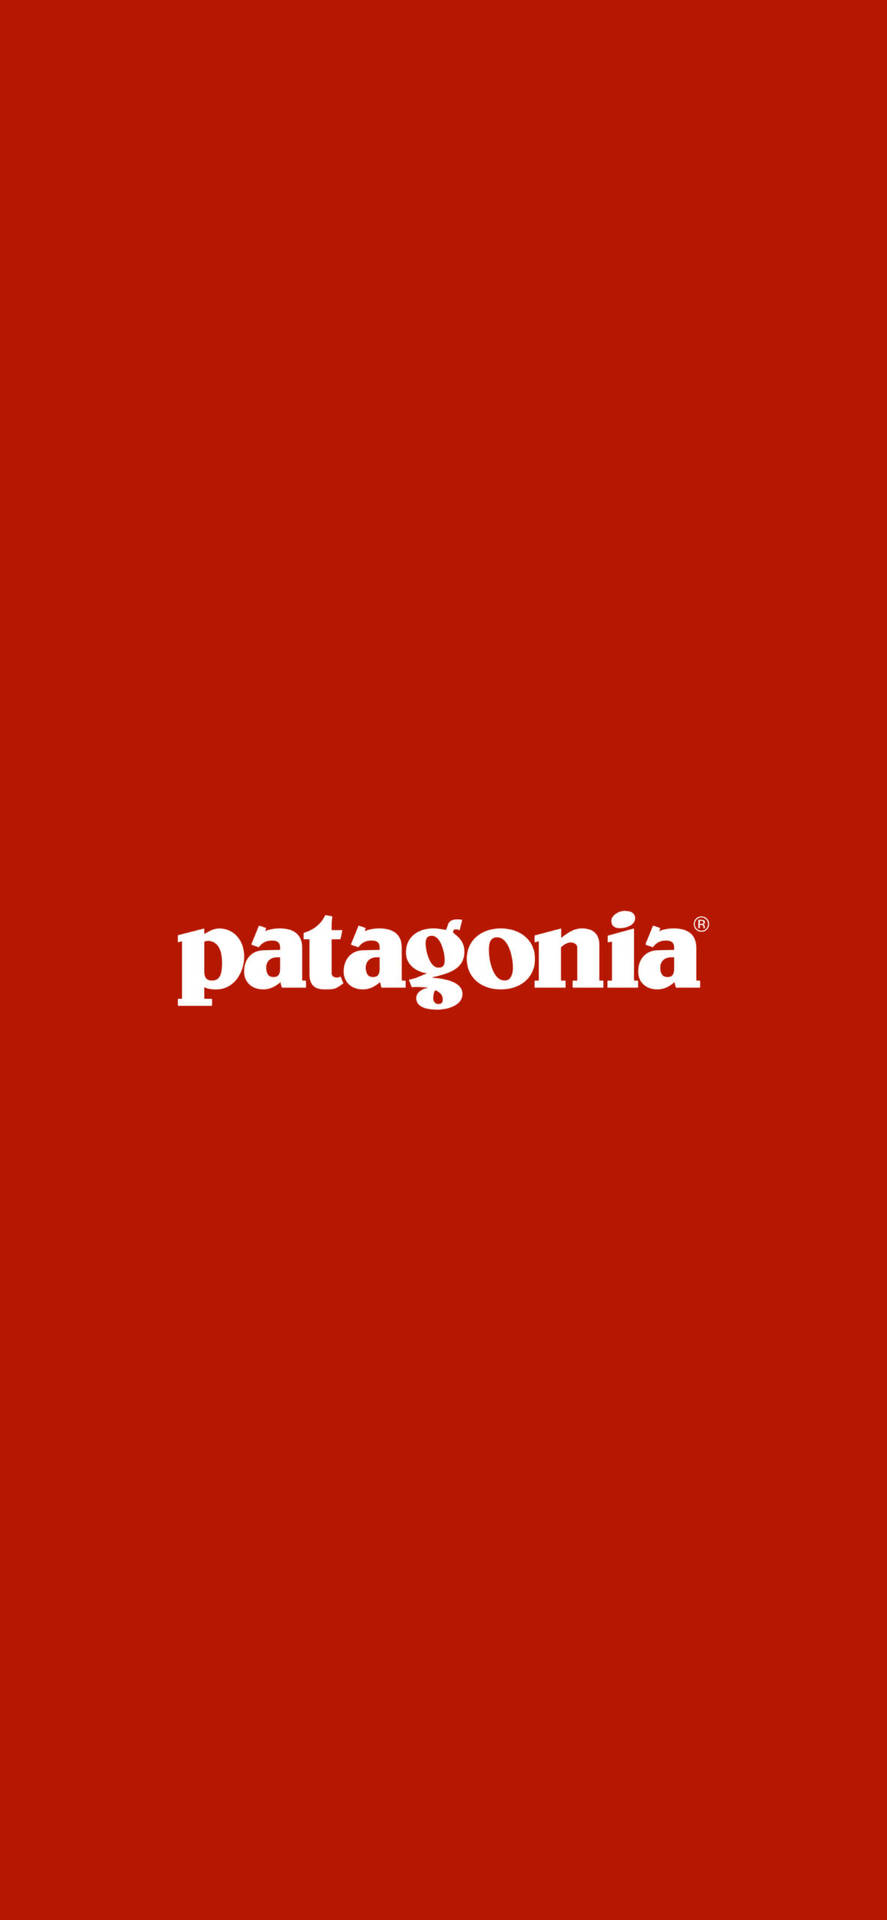 Red Patagonia Logo Wallpaper